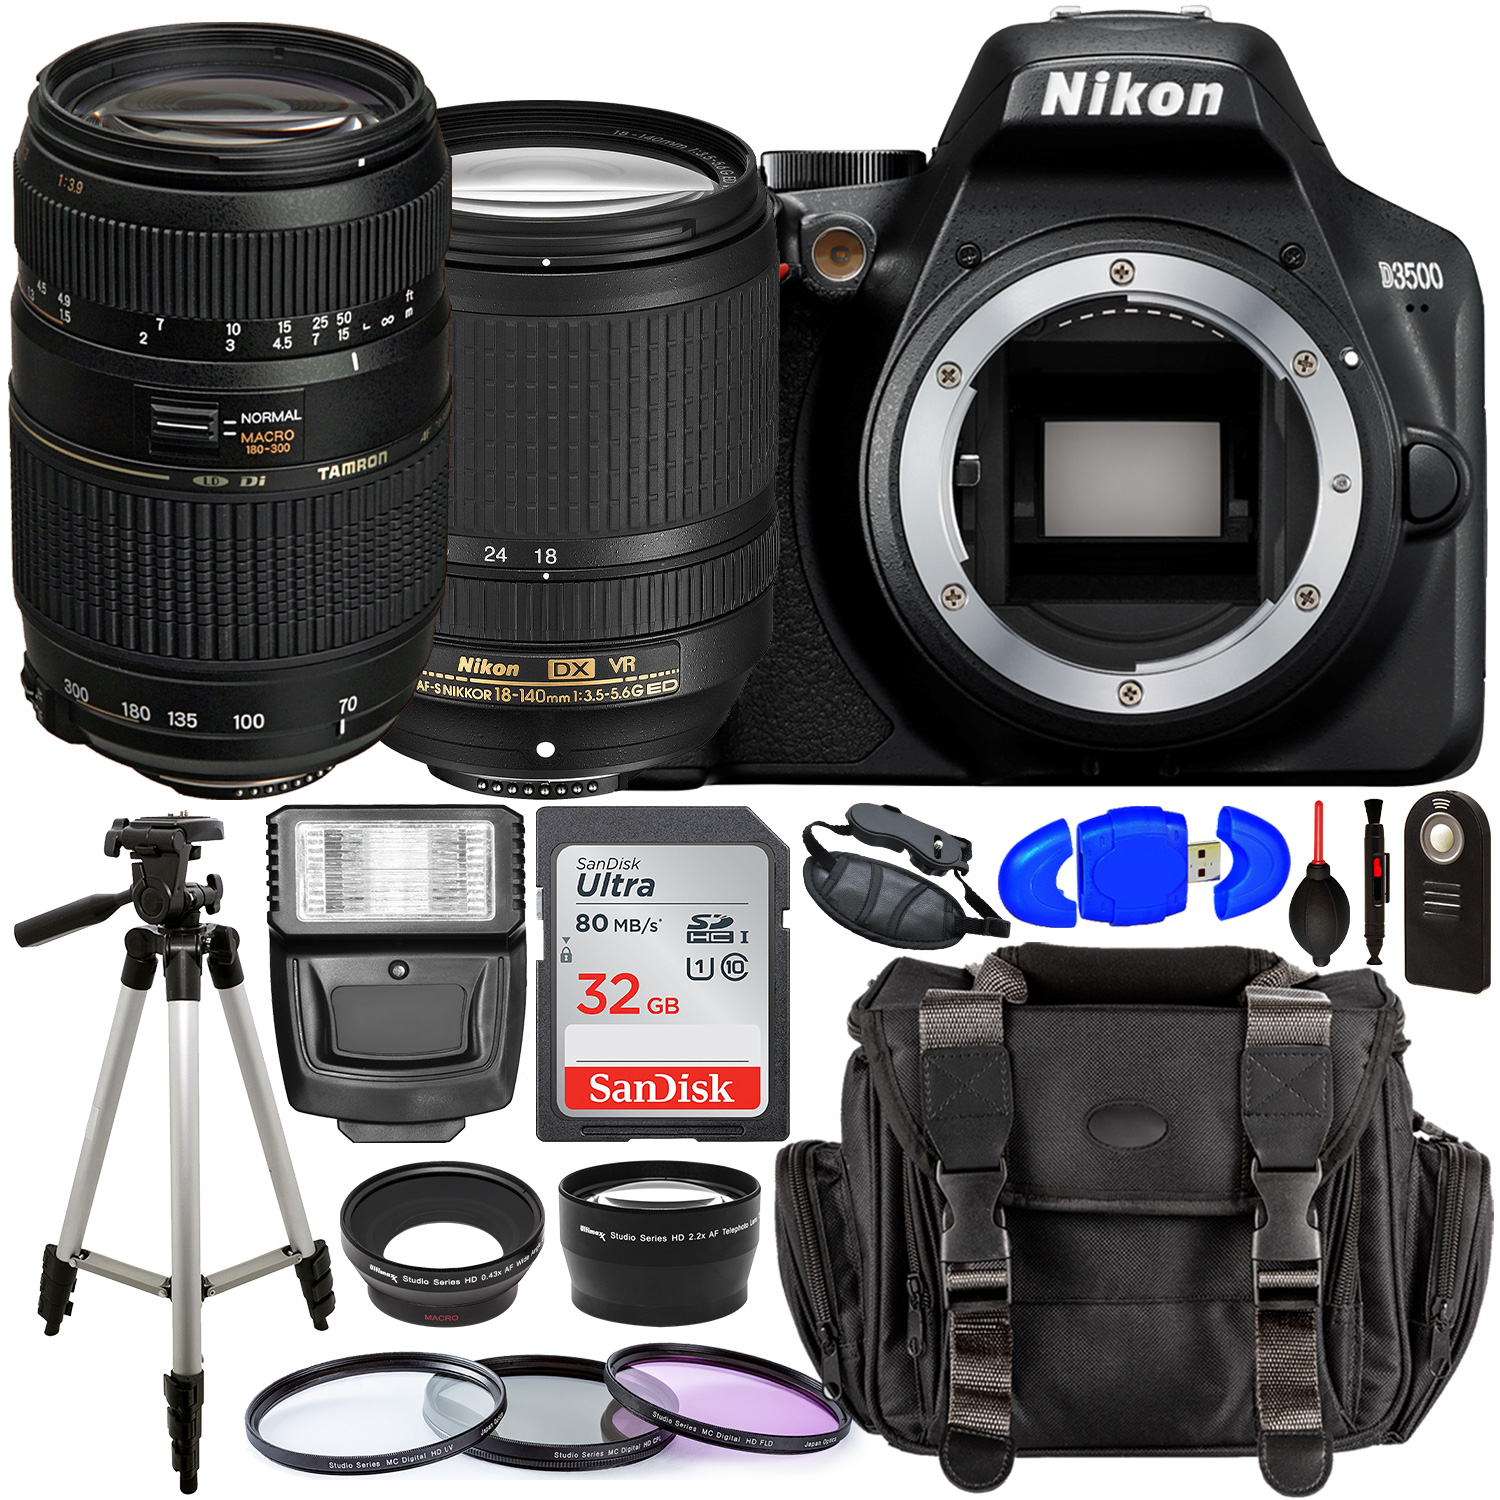 Nikon D3500 DSLR Camera with 18-140mm Lens (Black) â?? 1590 with Tamron 70-300mm Lens for Nikon AF - AF017NII-700 and Accessory Bundle